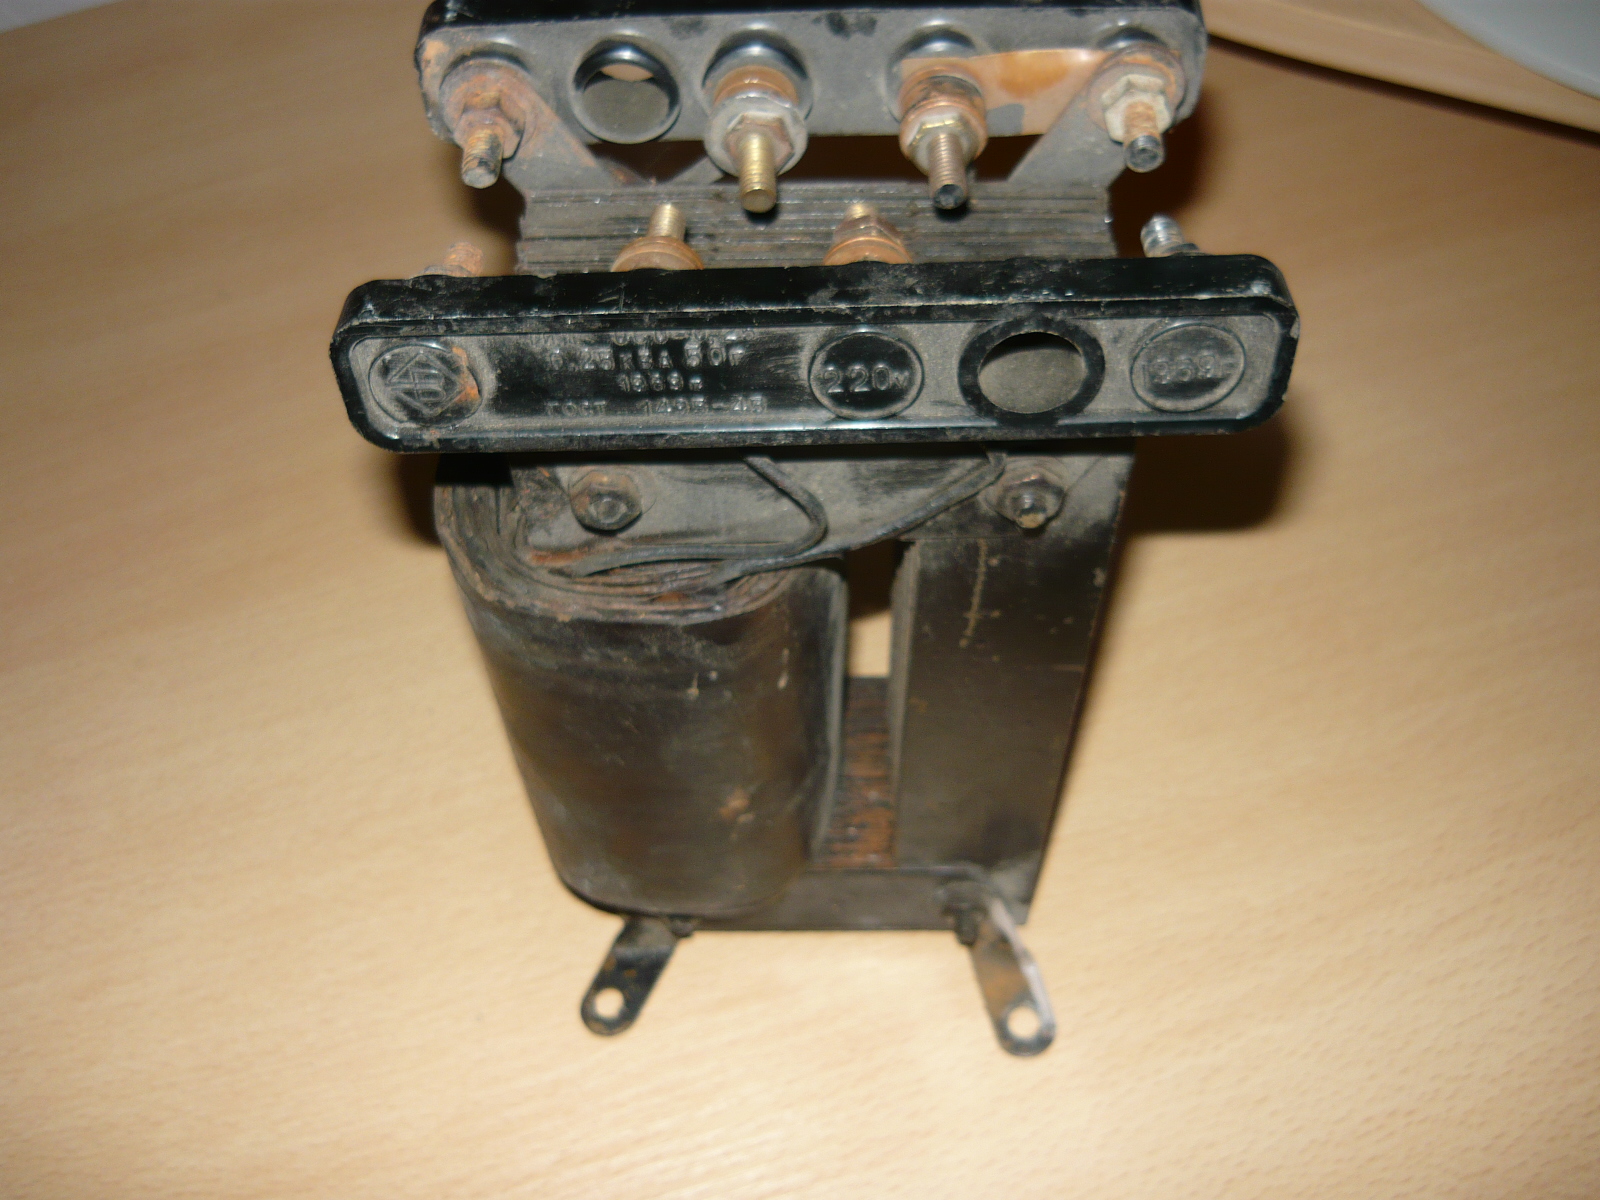 Понижающий трансформатор: явление электромагнитной индукции, сборка устройства на 12 вольт